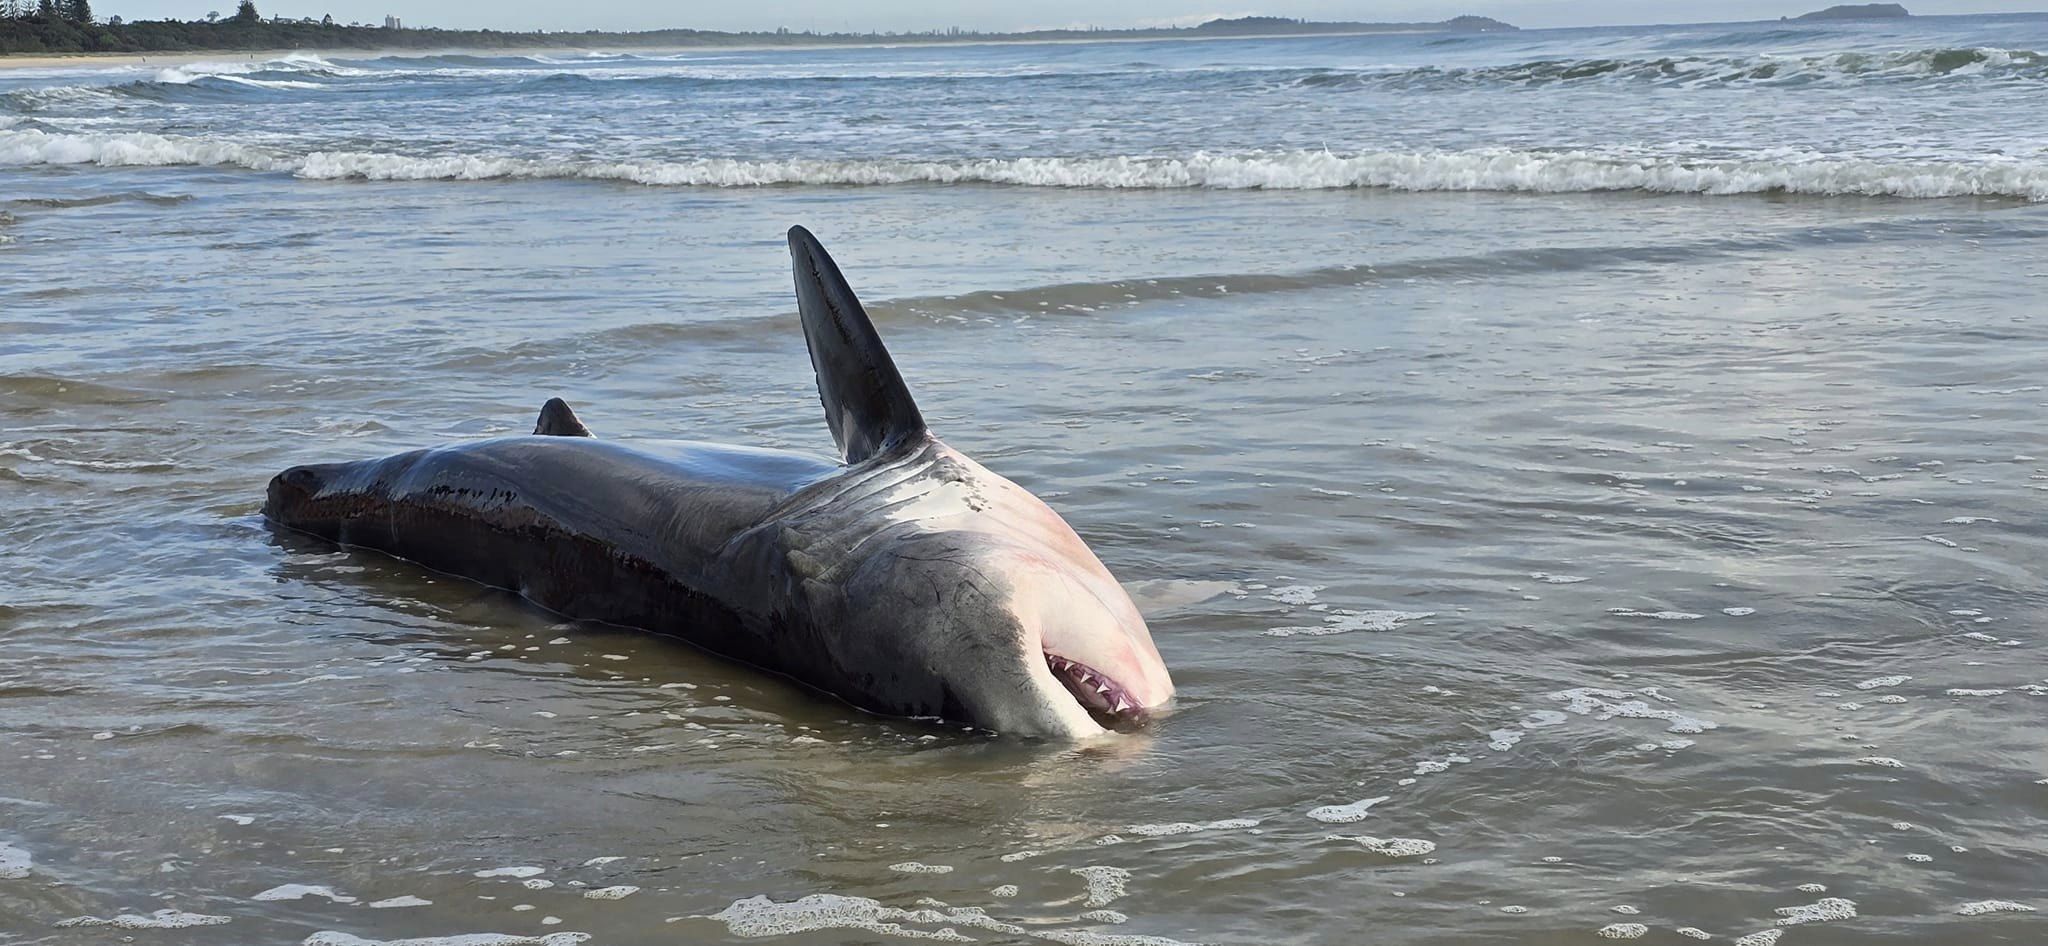 Great white shark shocks onlookers with strange beaching